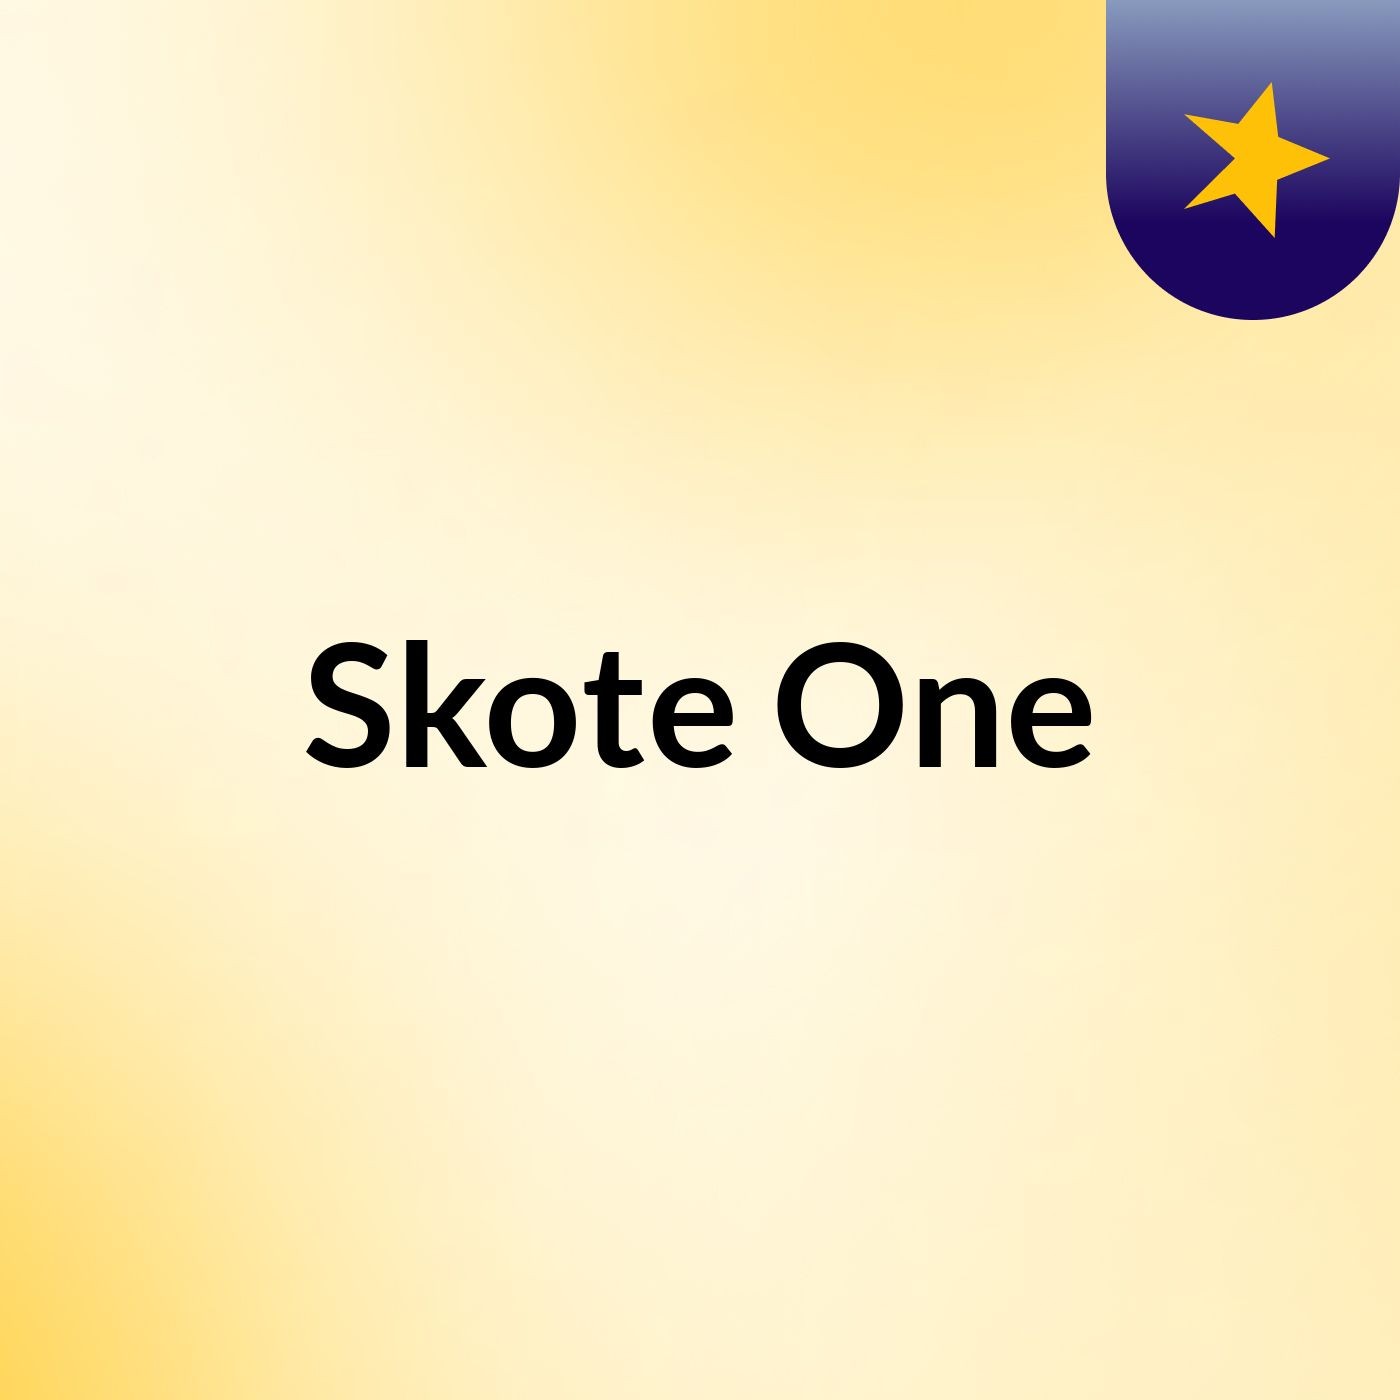 Skote One